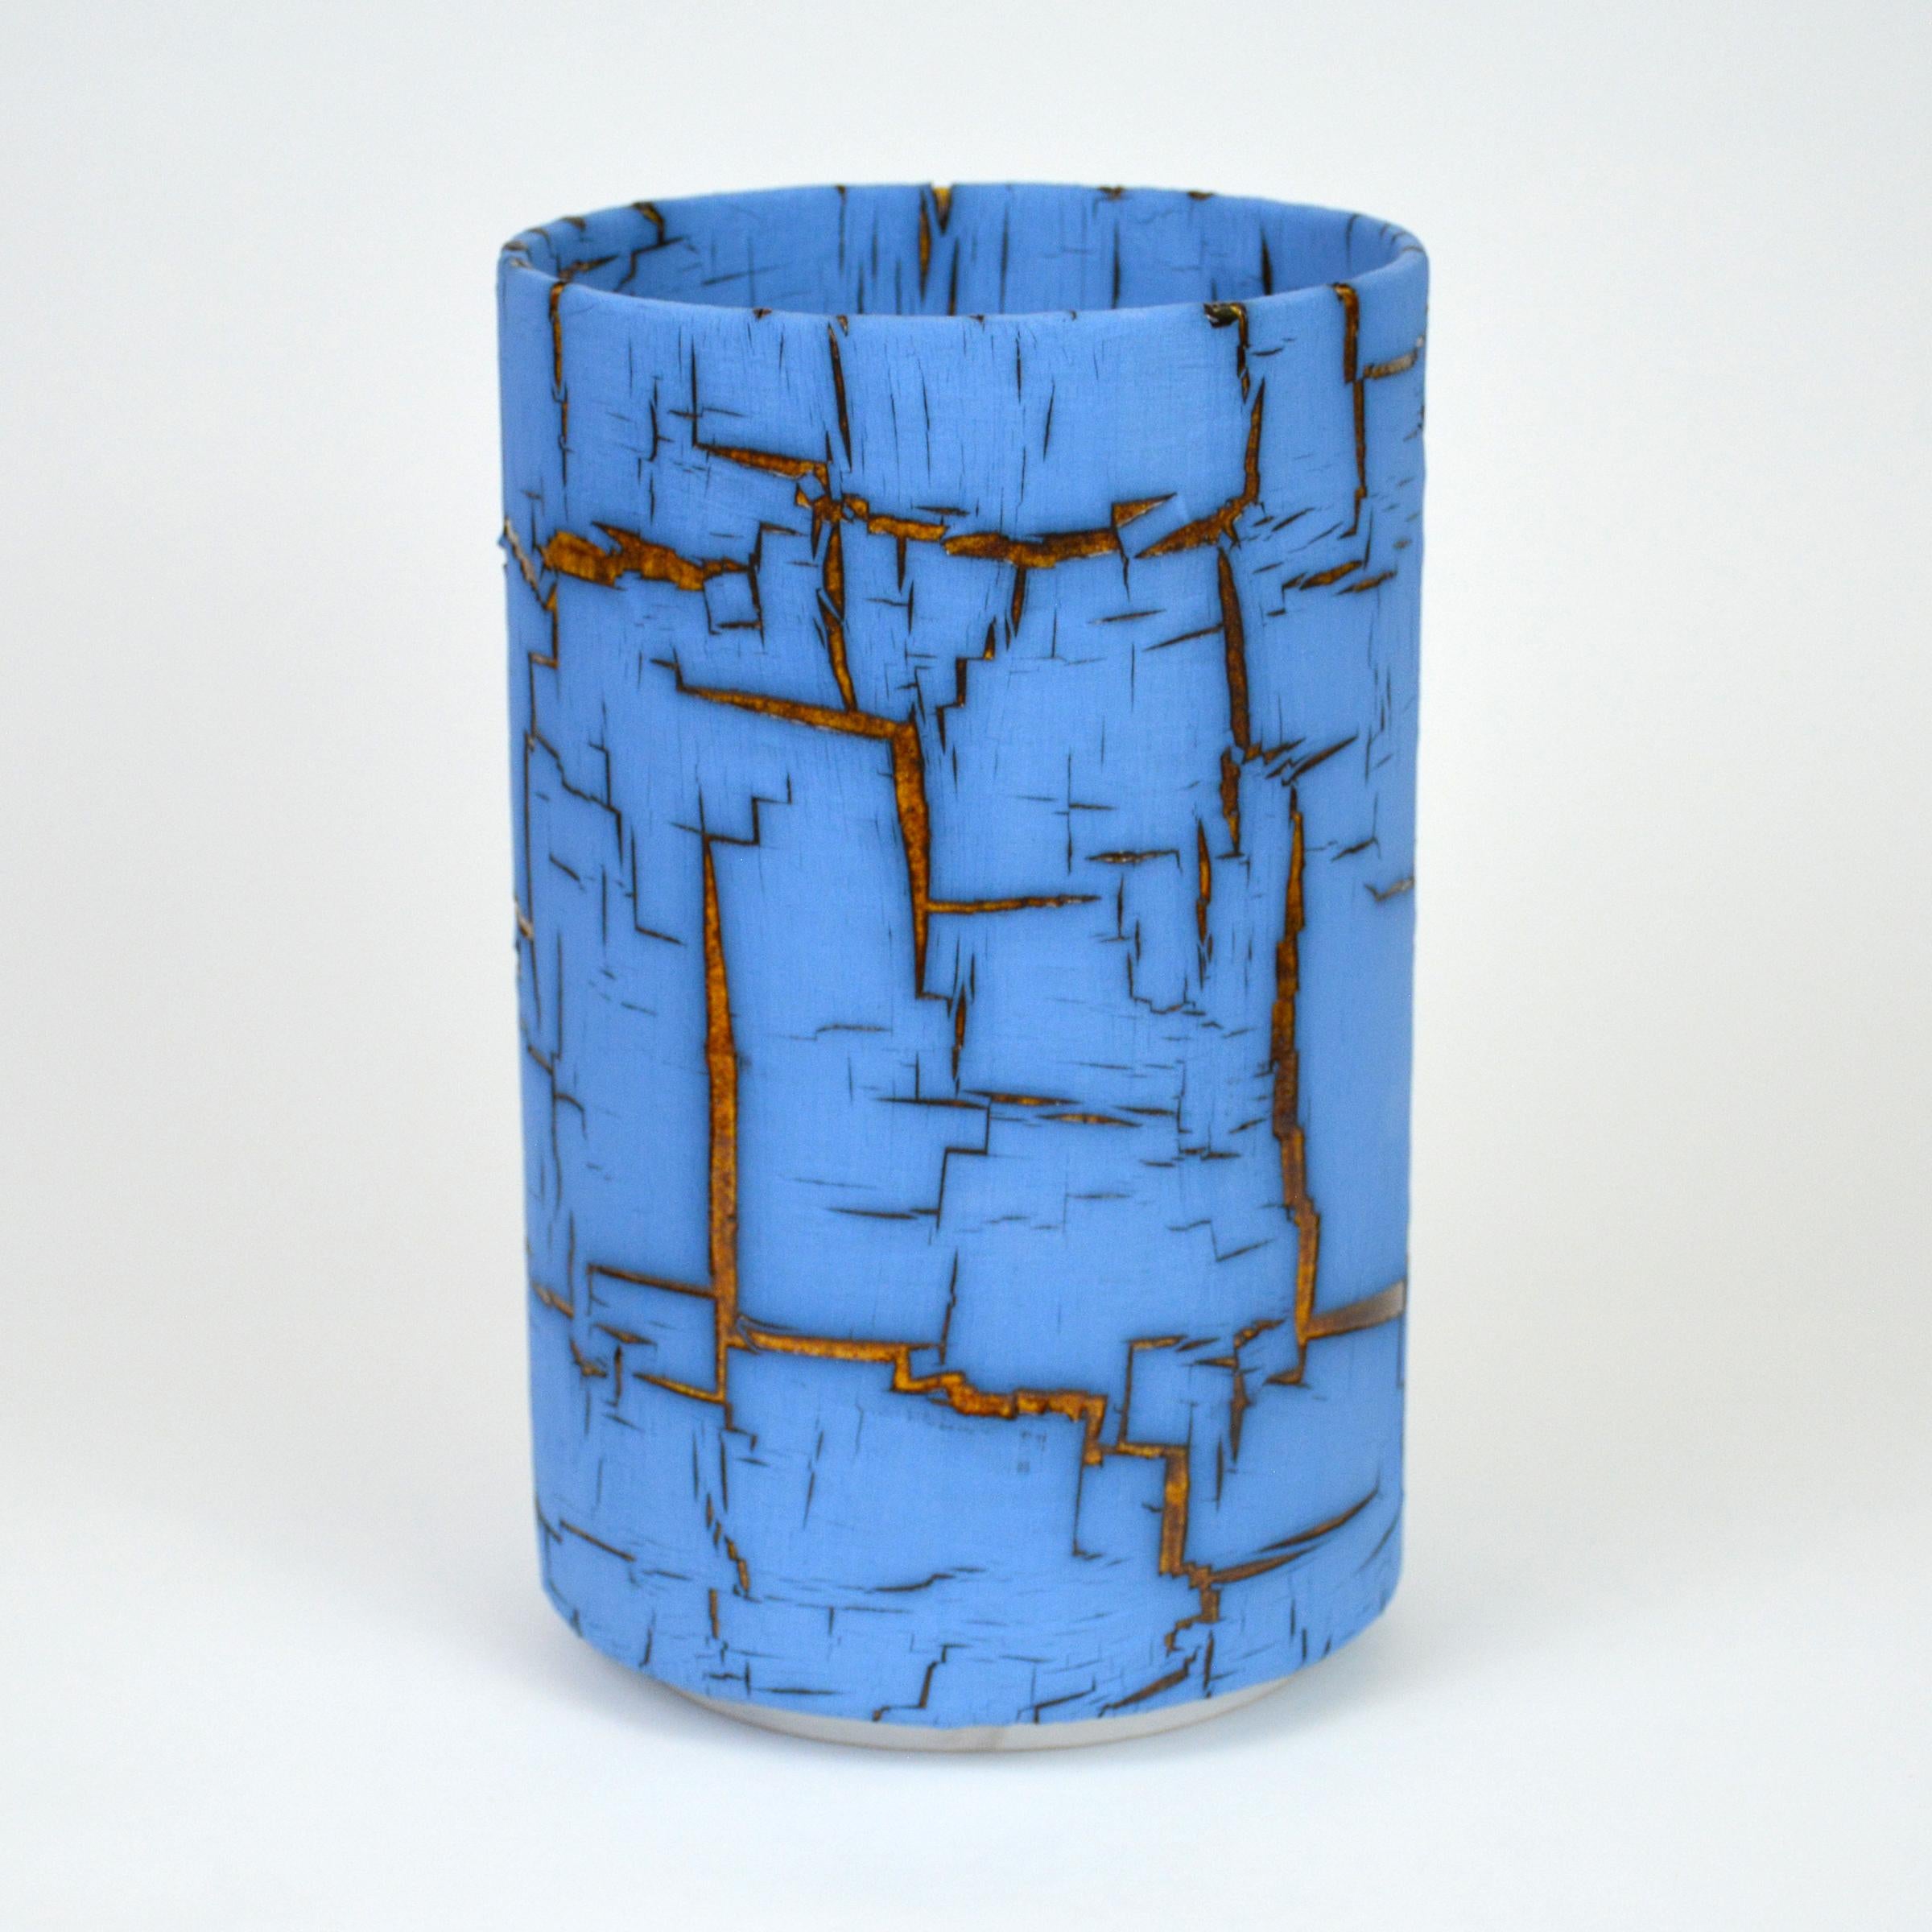 Zylindrische glasierte Keramikskulptur von William Edwards
Handgefertigtes Steingutgefäß, mehrfach gebrannt, um eine strukturierte Oberfläche von zufälliger Abstraktion zu erhalten, blaue matte und bernsteinfarbene glänzende Glasur, die